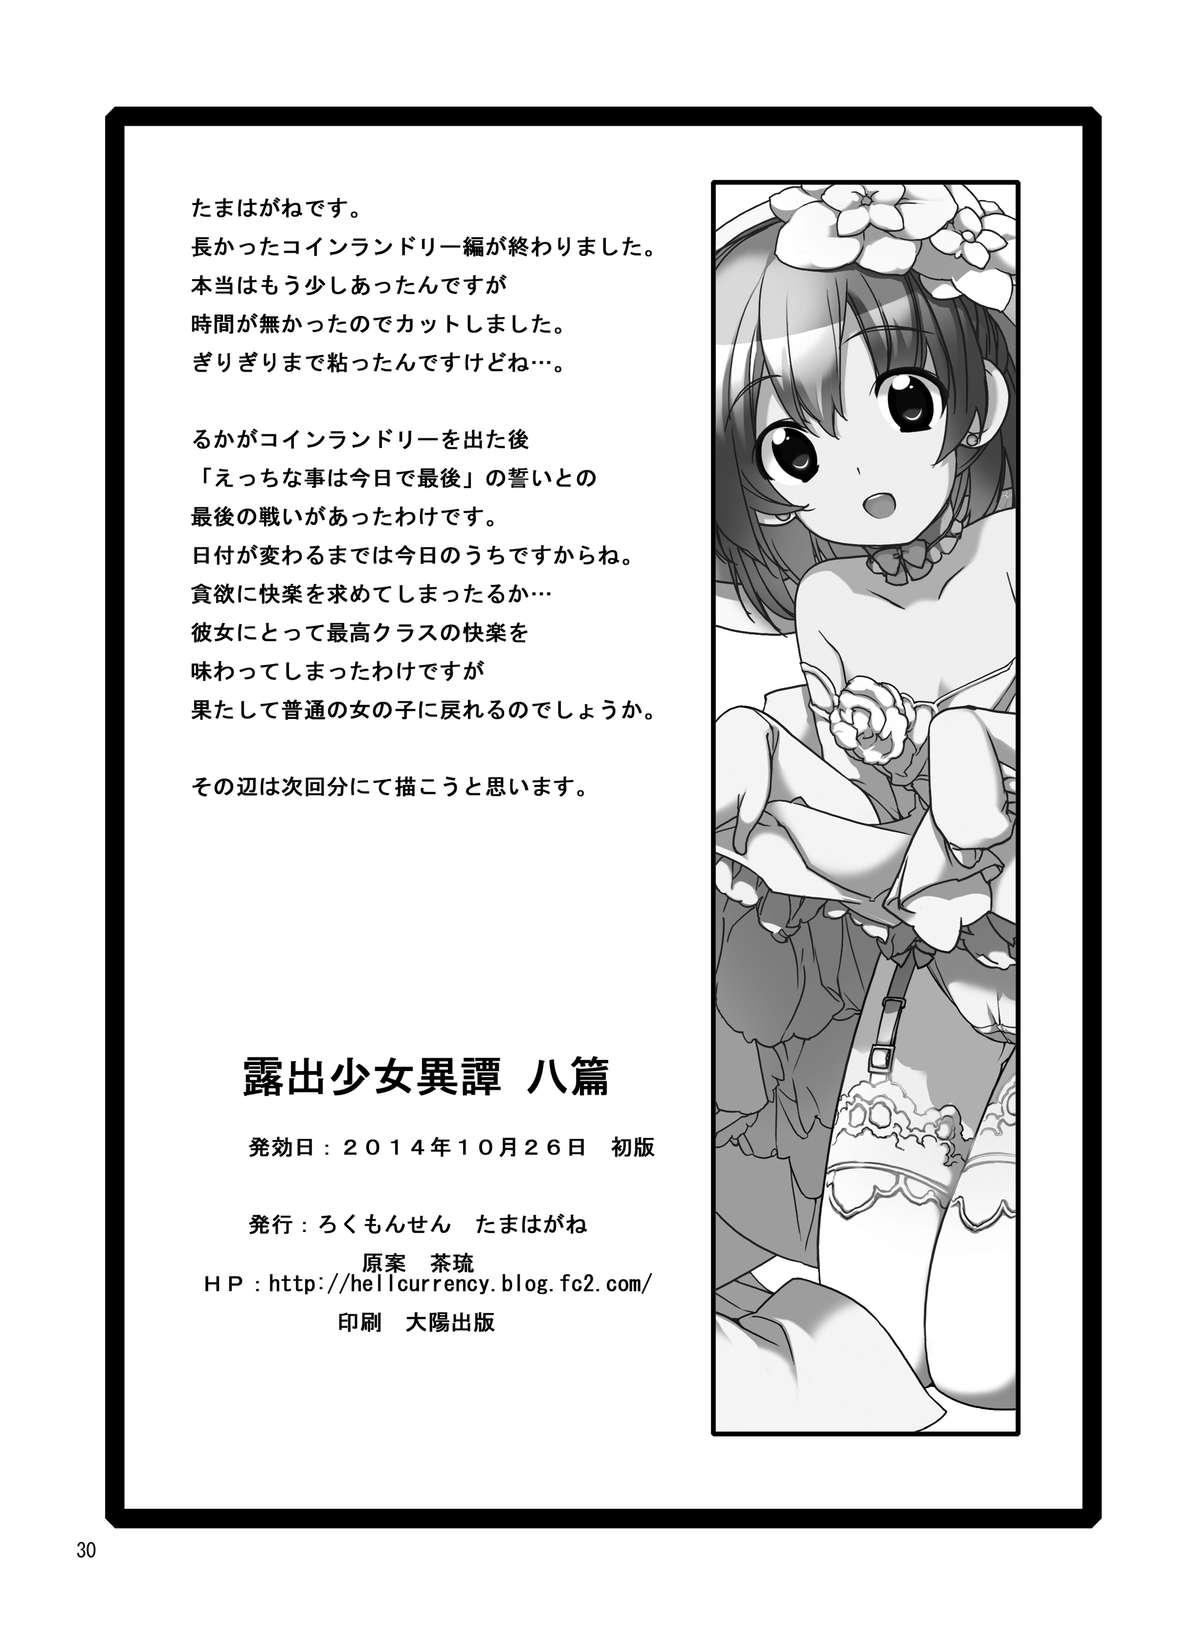 Milk Roshutsu Shoujo Itan 8 Hen Com - Page 30